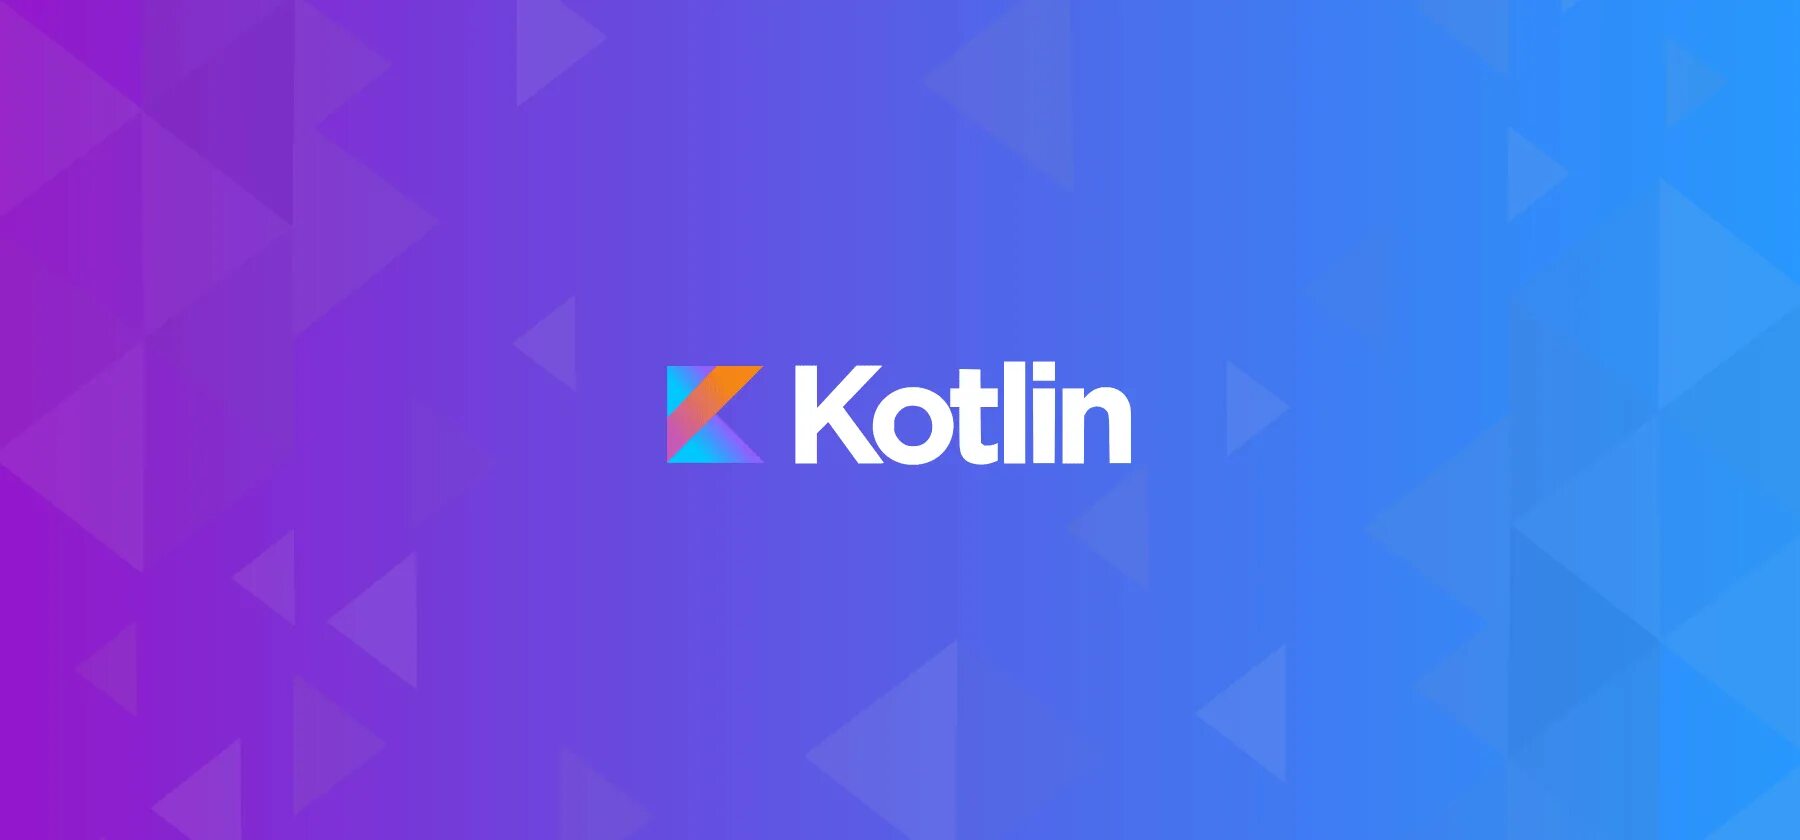 First kotlin. Язык Kotlin. Котлин язык программирования. Kotlin логотип. Kotlin язык программирования логотип.